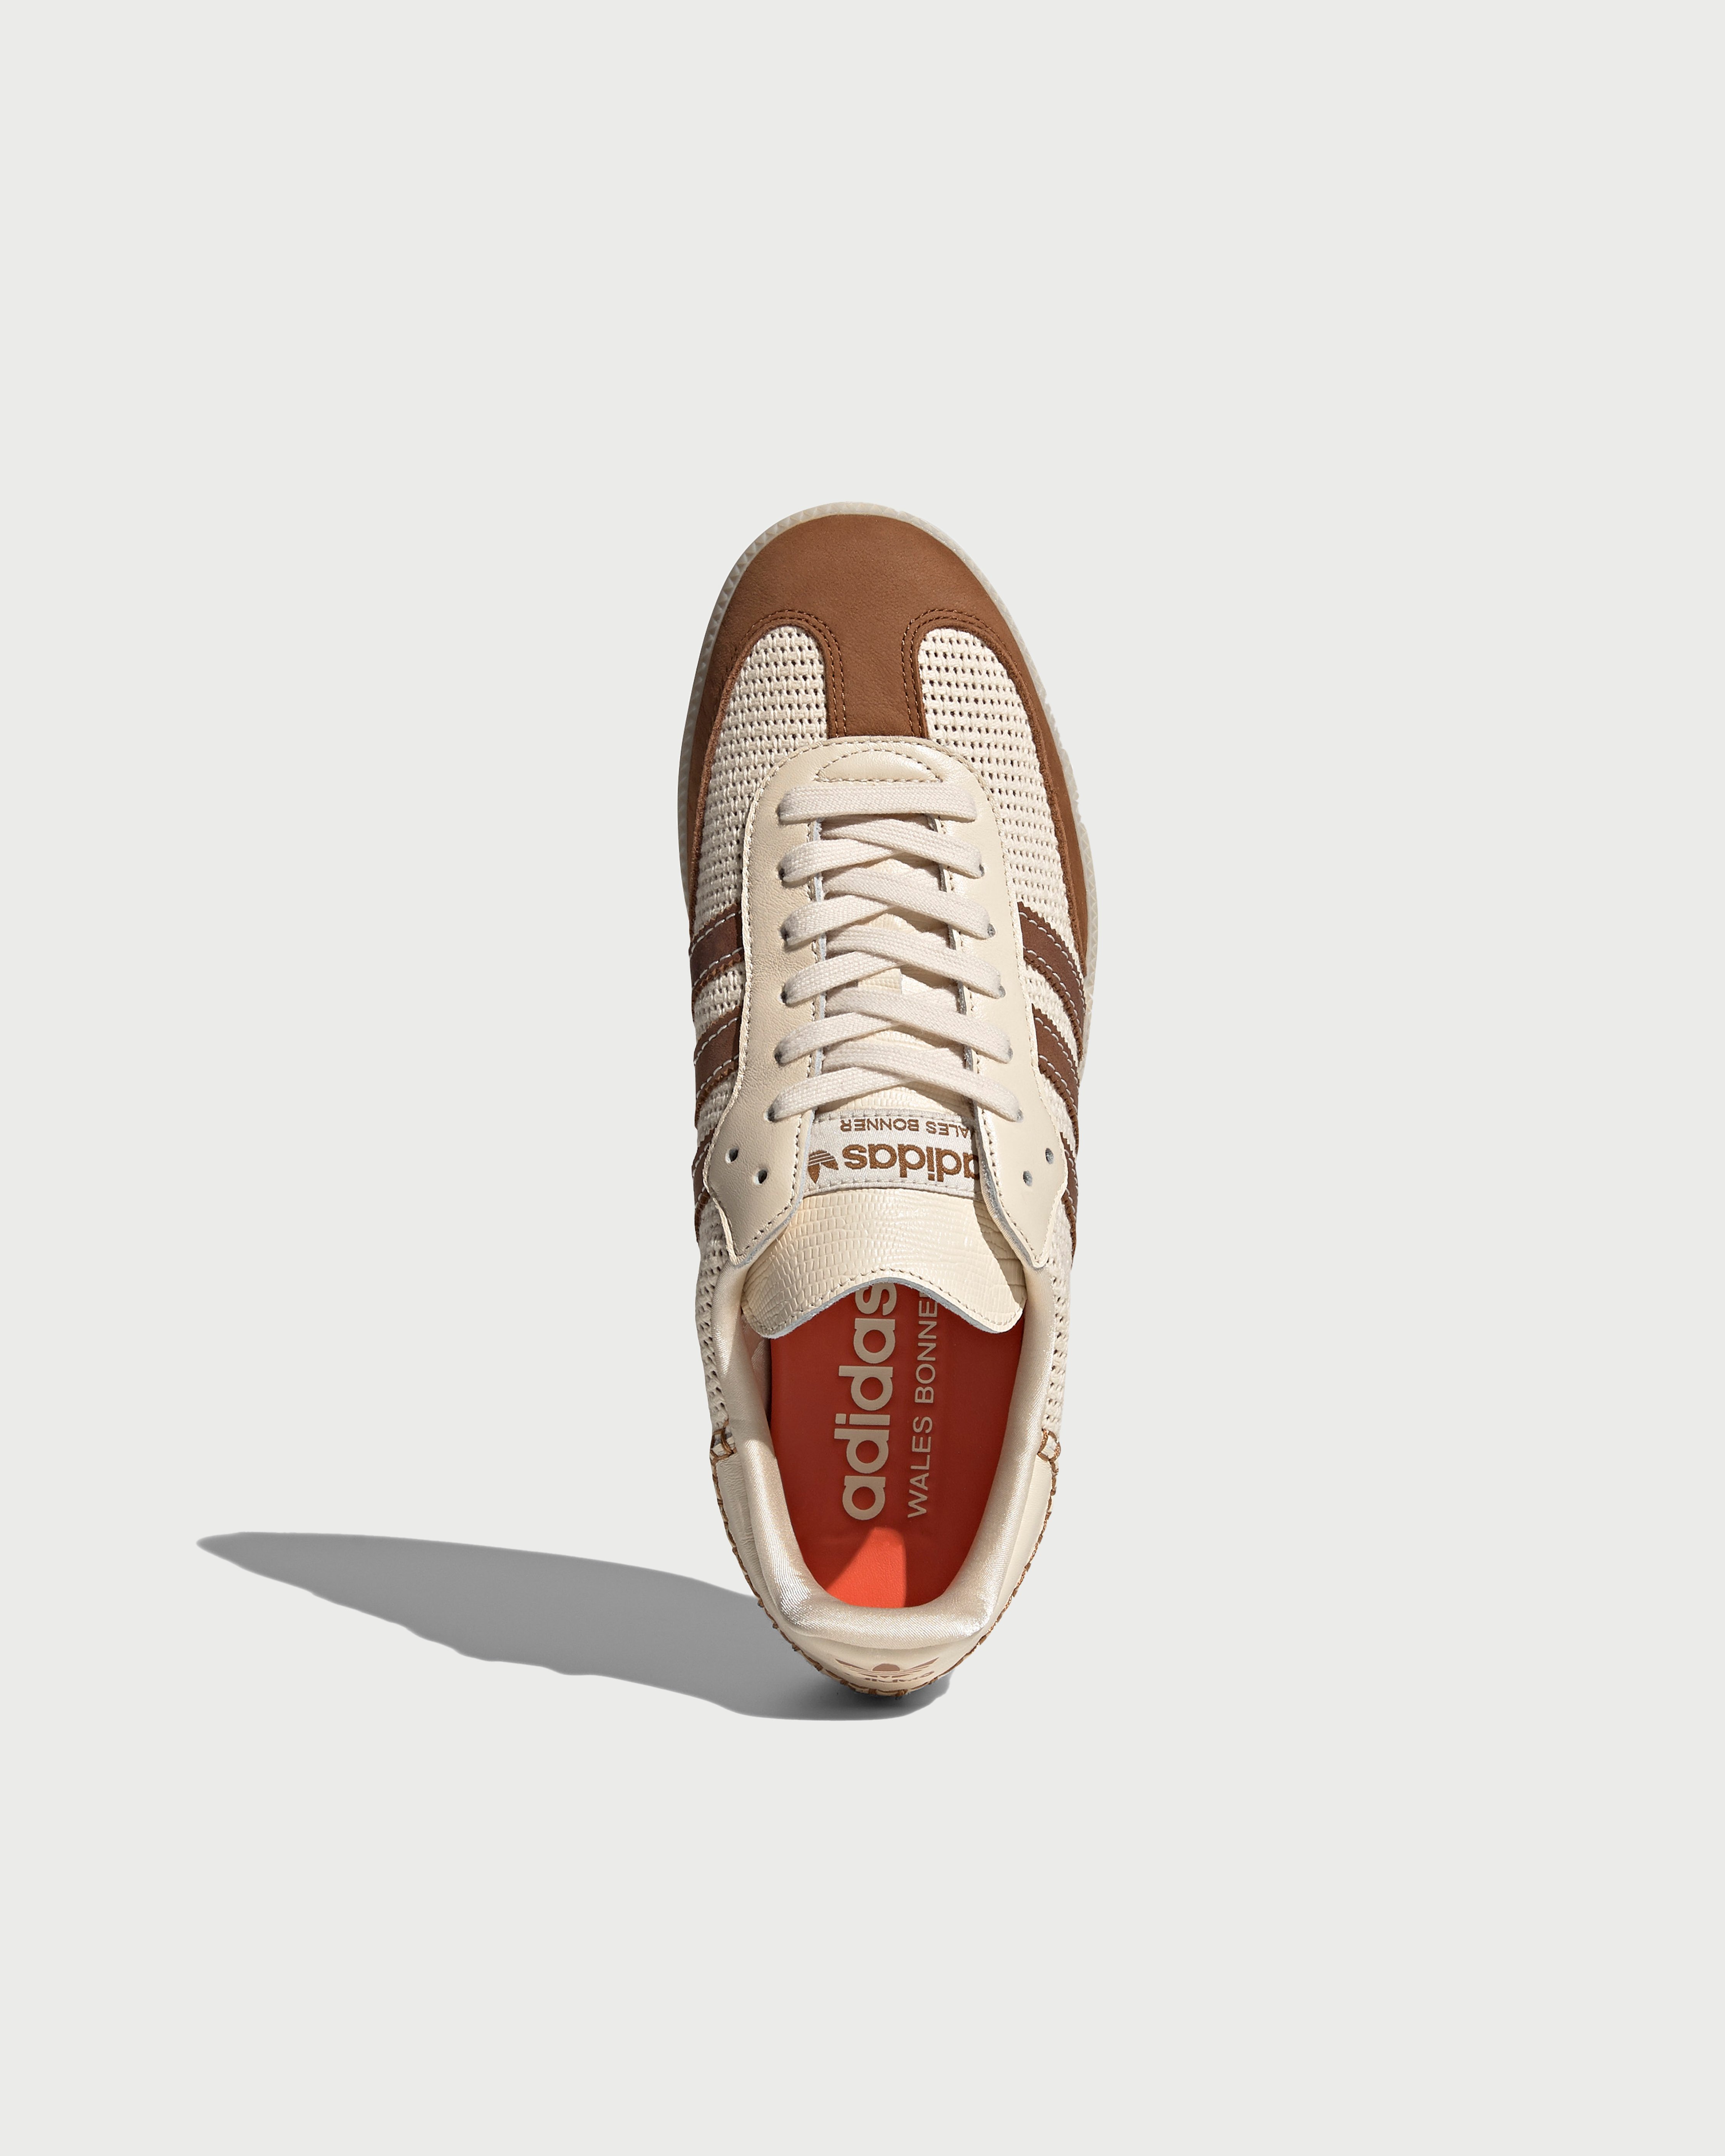 Adidas x Wales Bonner - Samba White/Brown - Footwear - Beige - Image 4